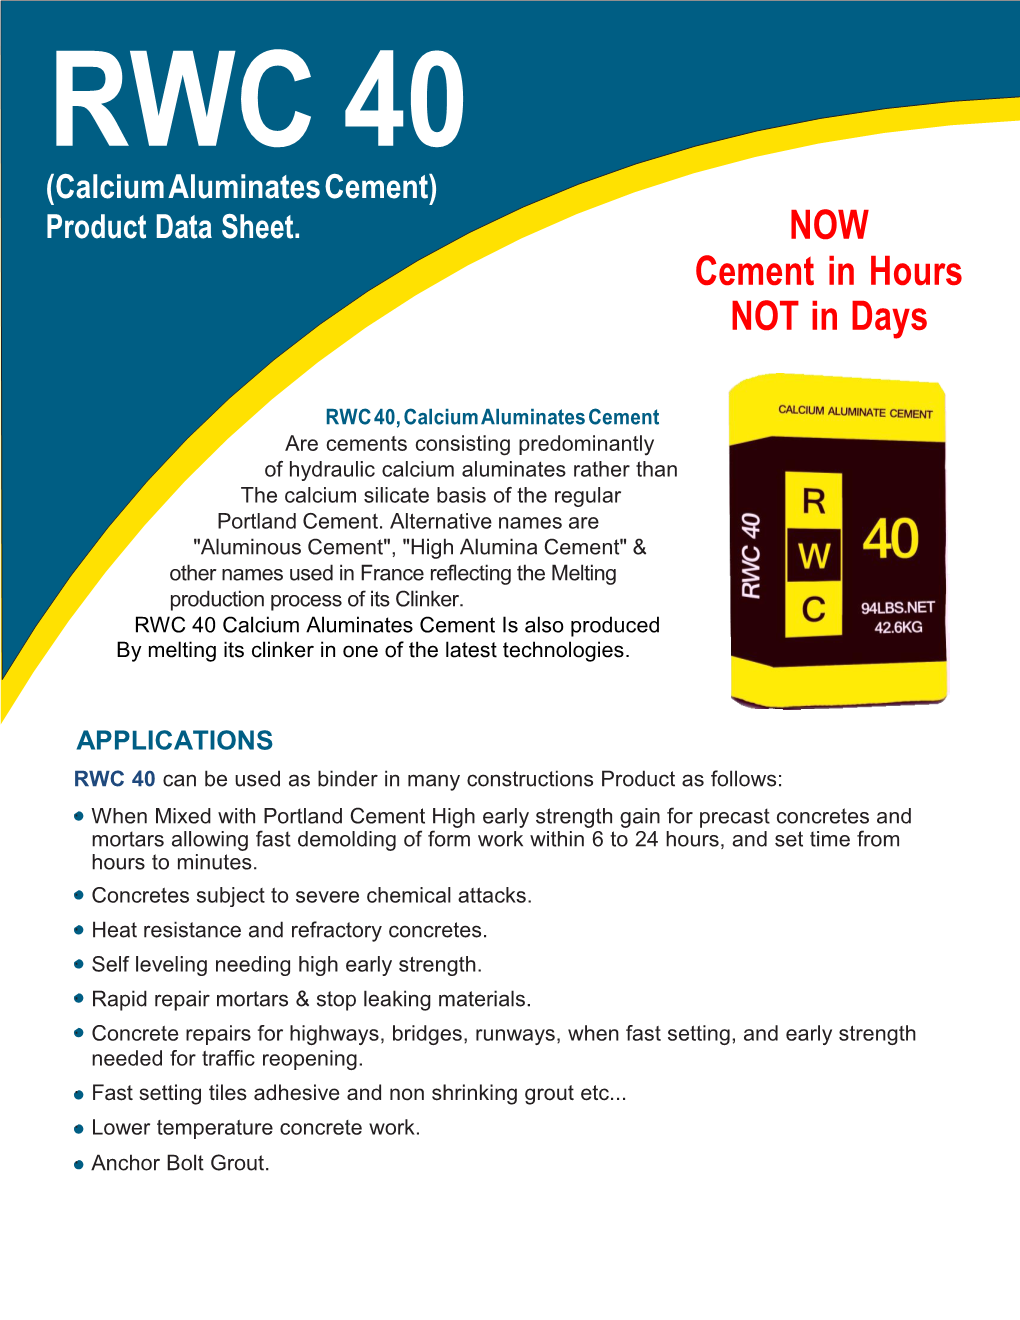 RWC 40 (Calcium Aluminates Cement) Product Data Sheet